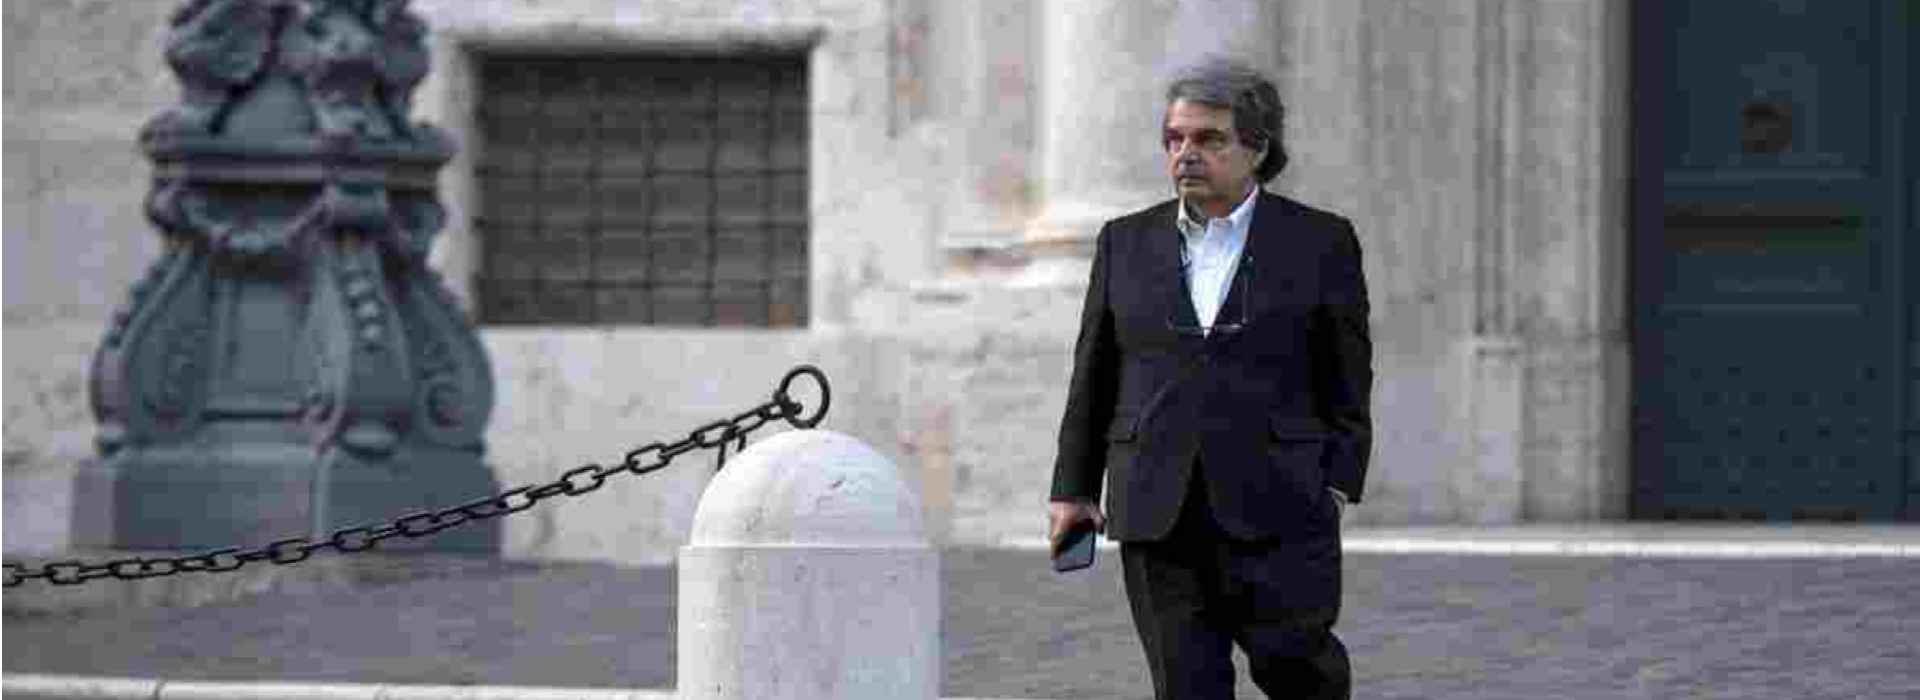 Crisi di governo: Conte cerca i "responsabili" e Brunetta gliene offre dieci